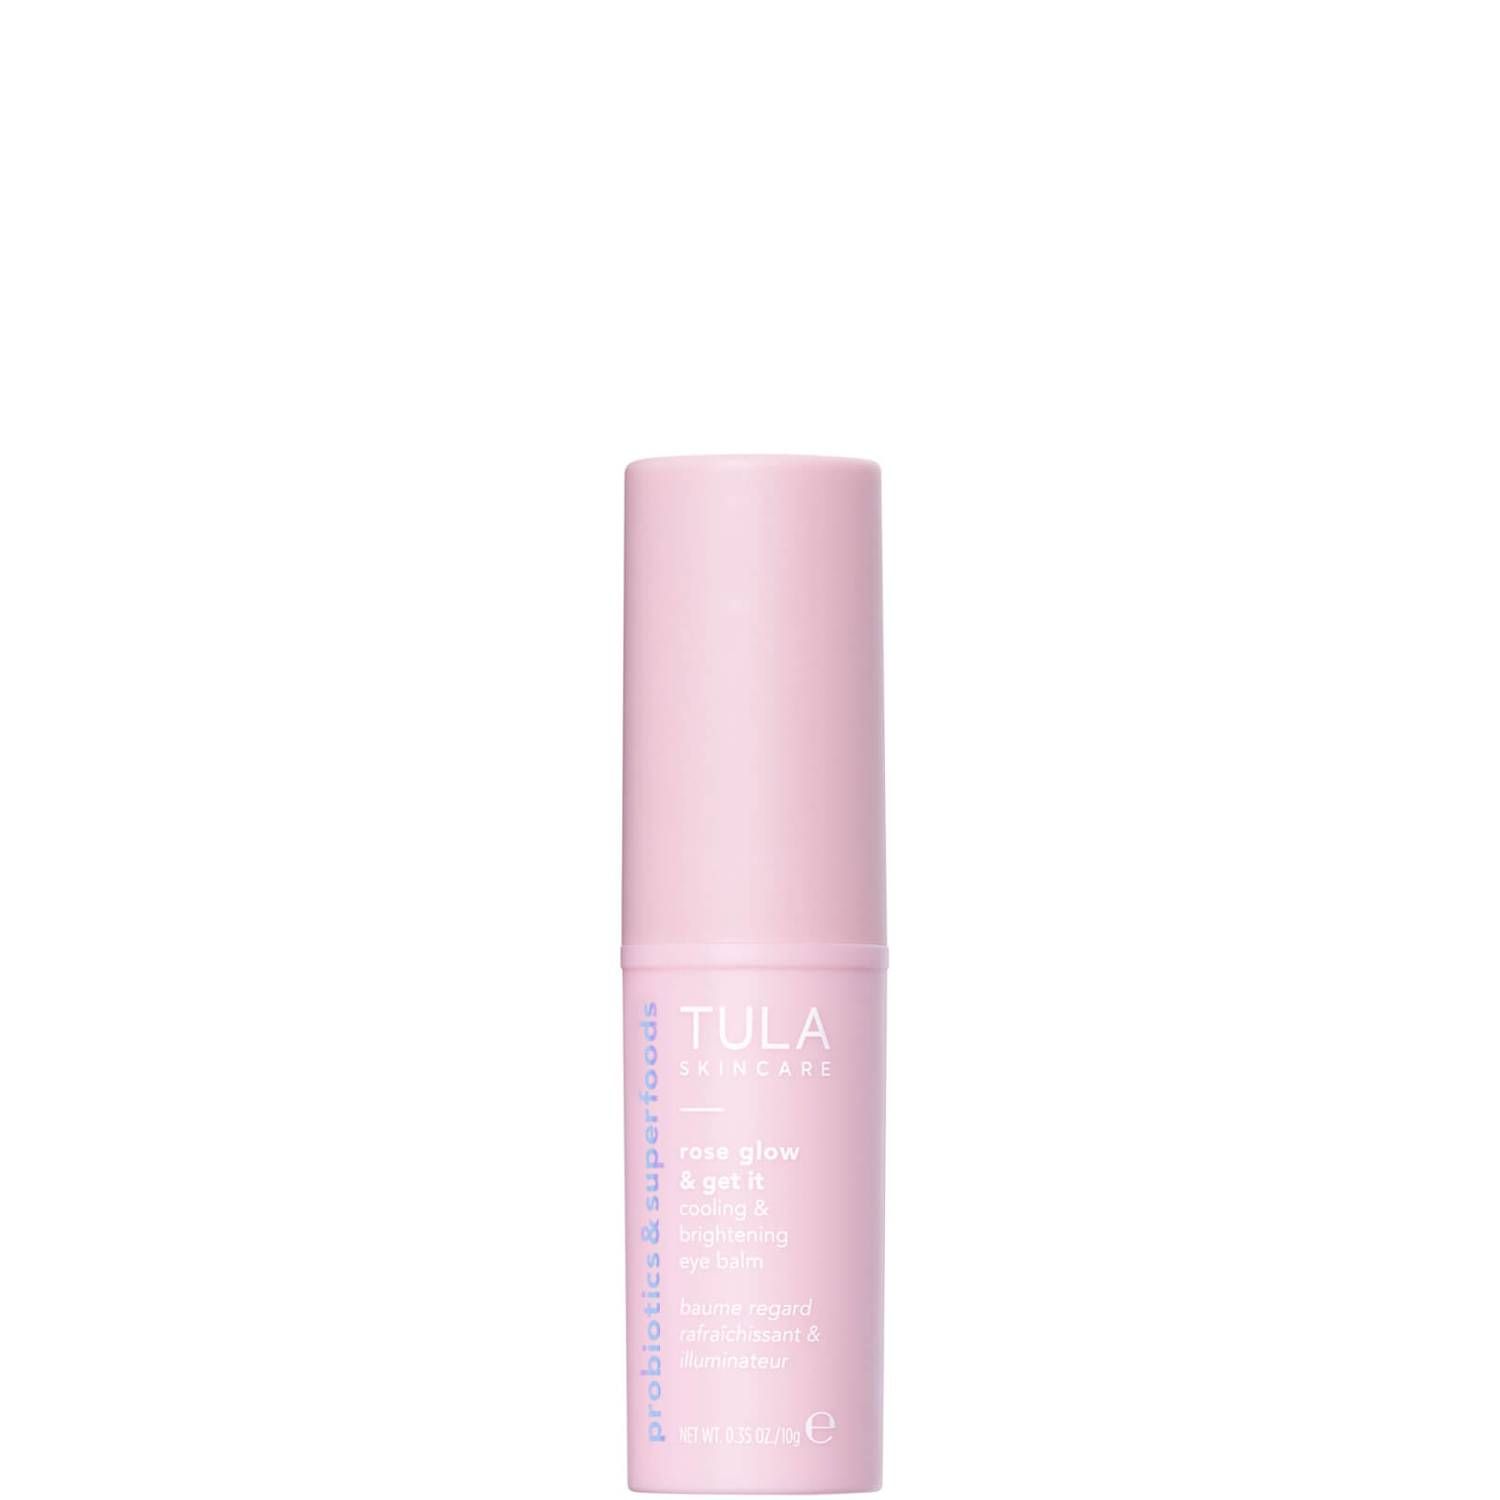 TULA Skincare Rose Glow Get It Cooling Brightening Eye Balm (0.35 oz.) | Dermstore (US)